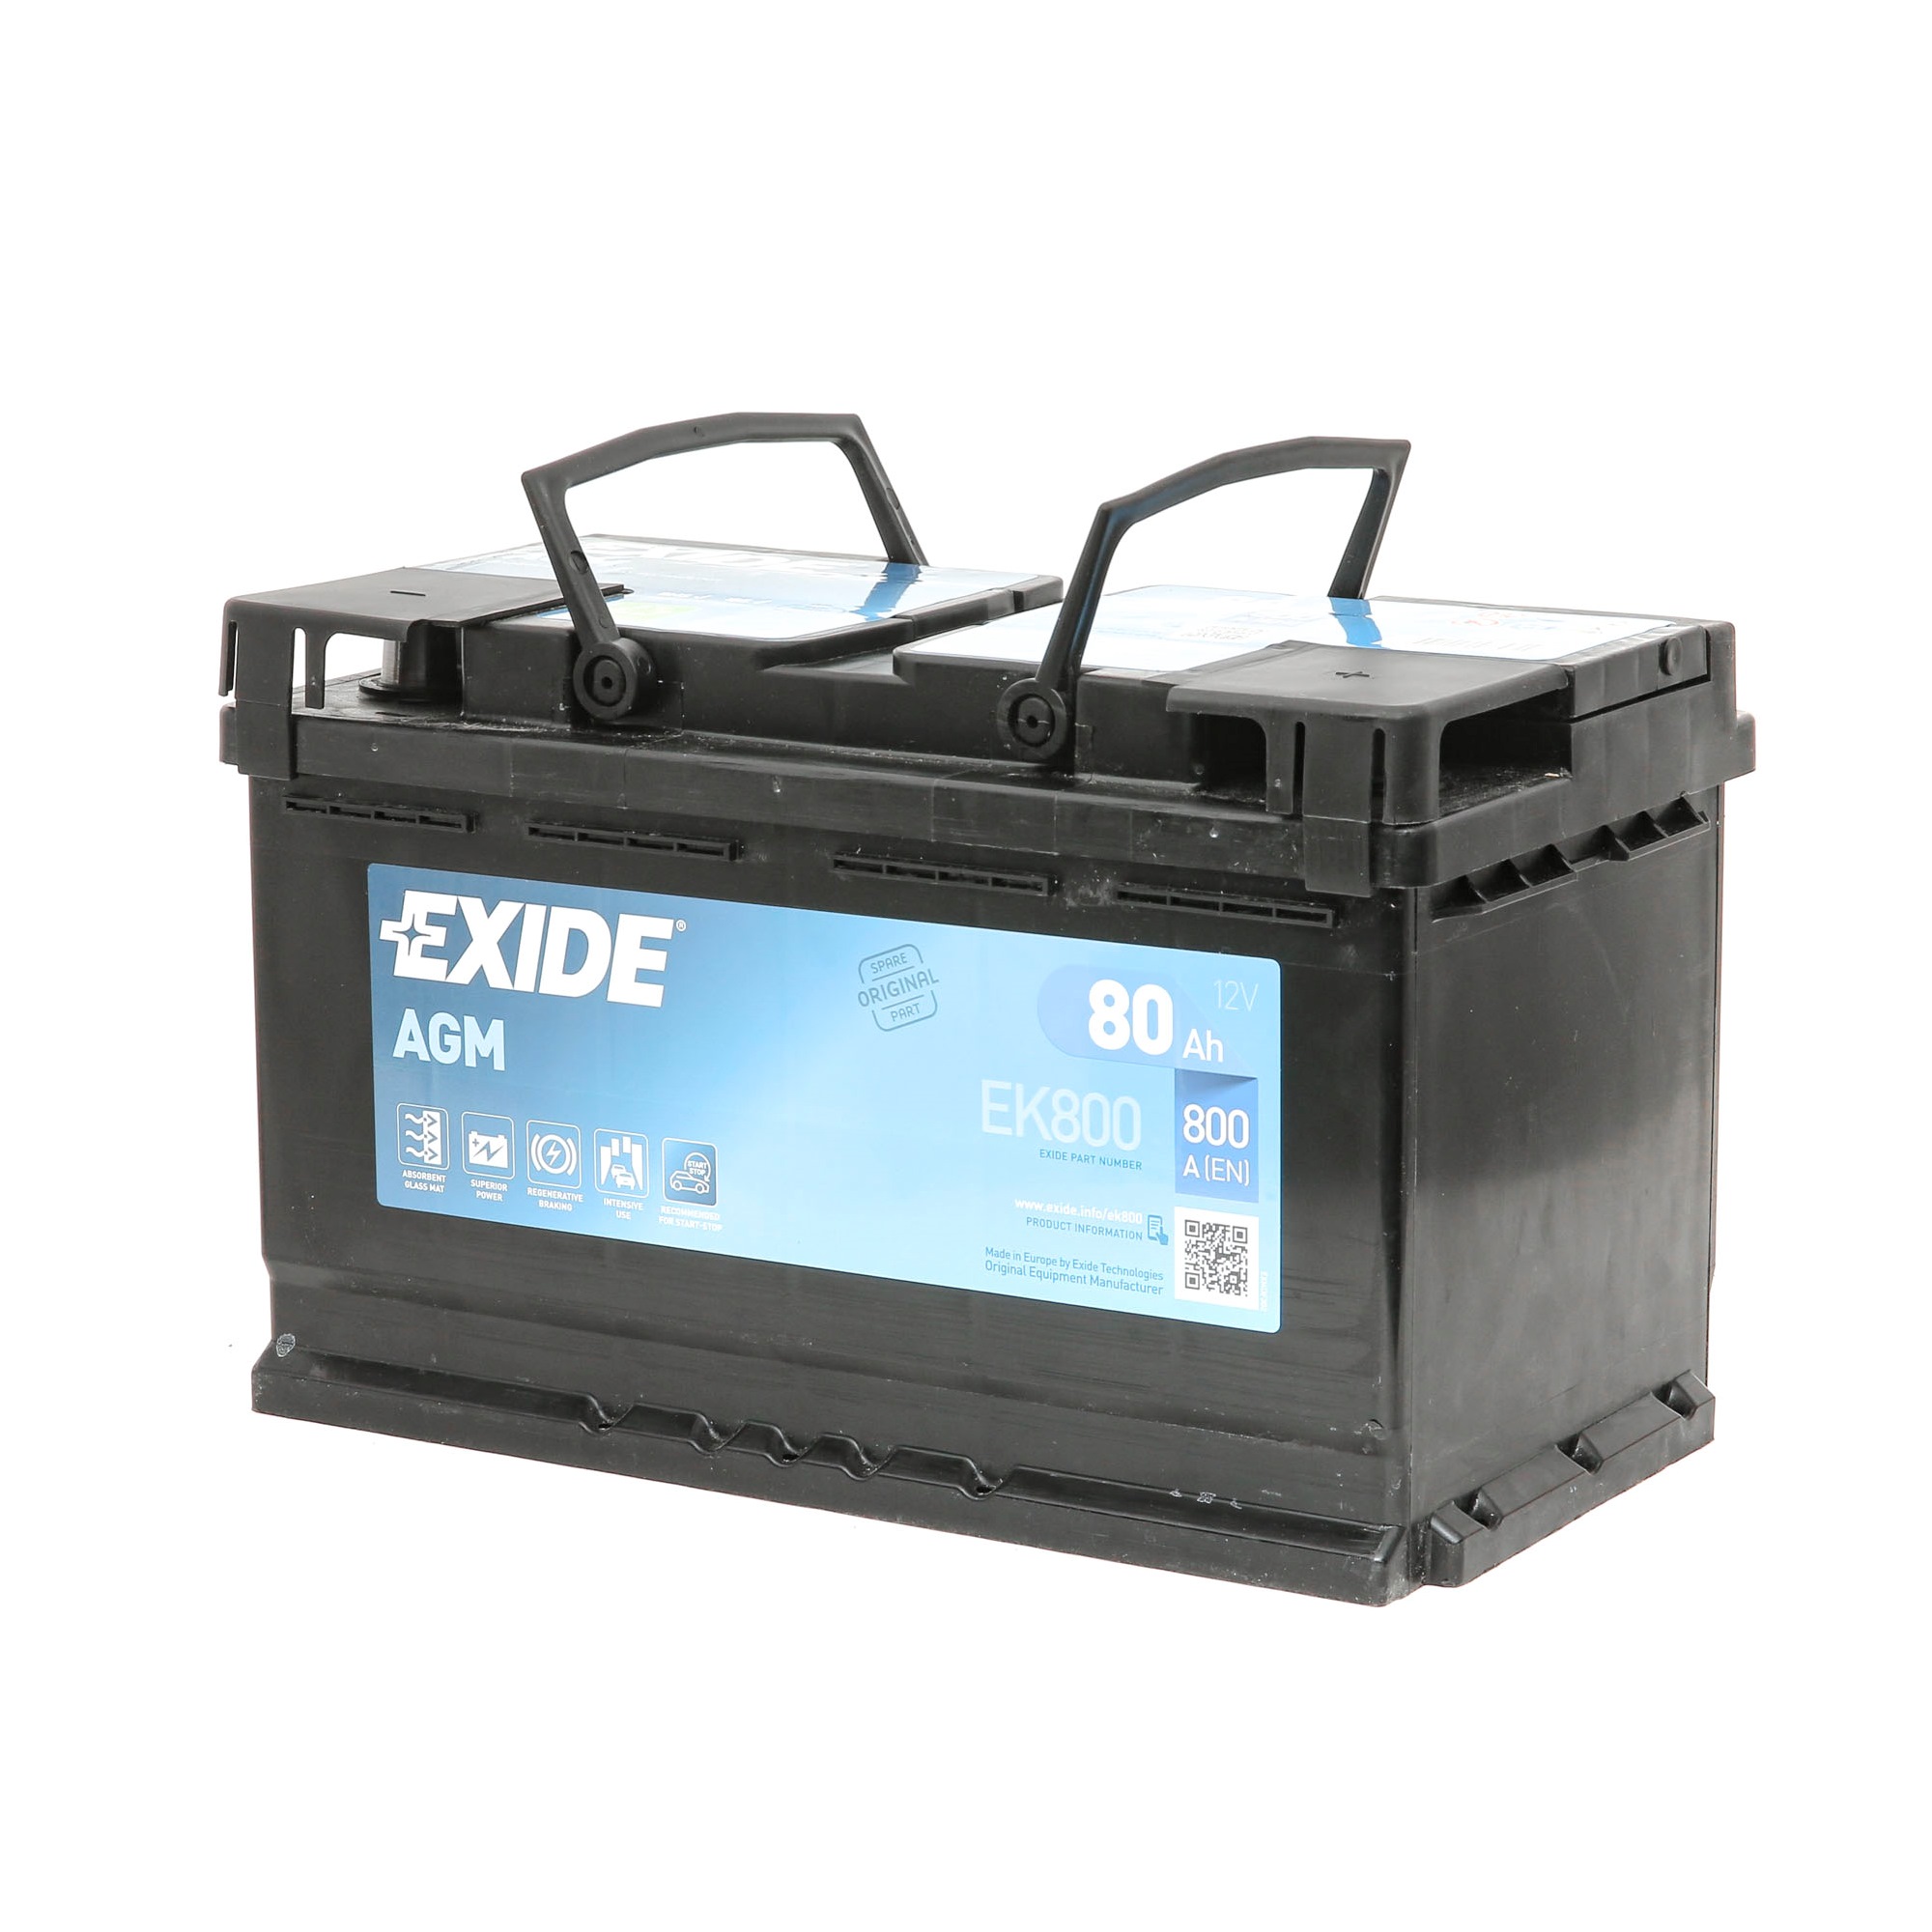 EXIDE EK800